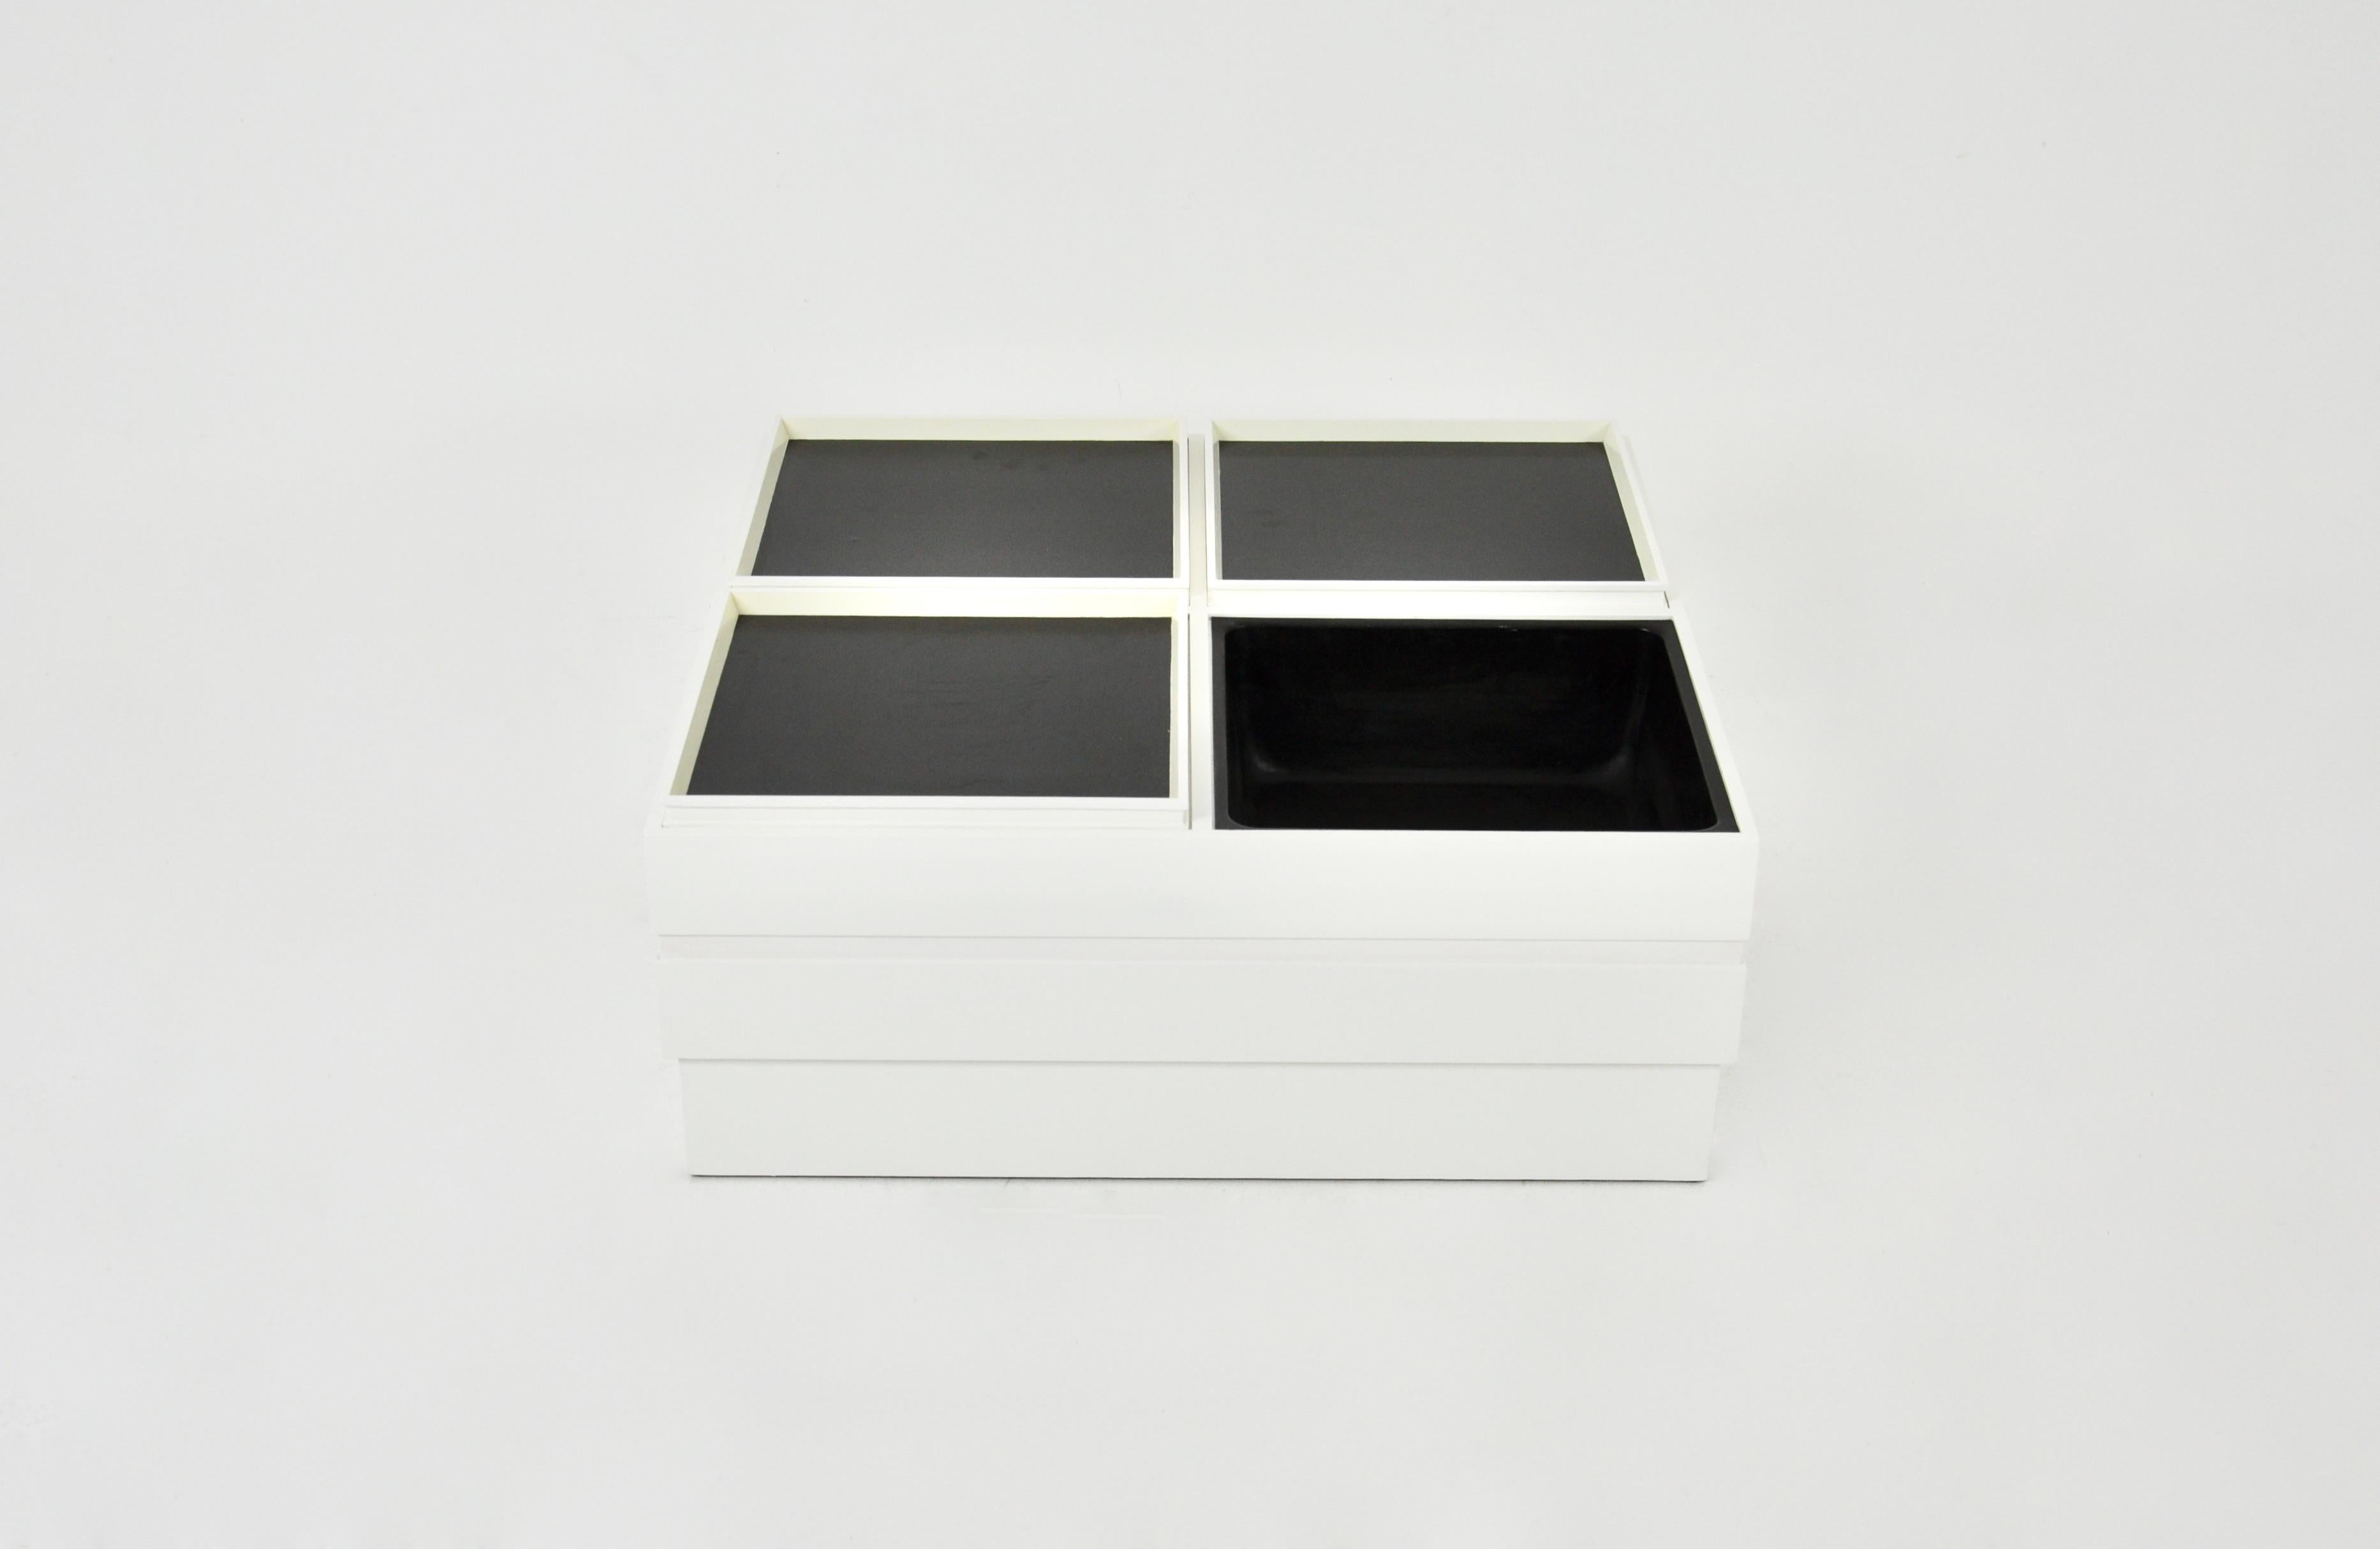 Table basse en bois blanc avec 4 compartiments de rangement. Il y a 3 plateaux, un noir et un blanc, et un plateau. L'ensemble est modulaire. Usure due au temps et à l'âge de la table basse.